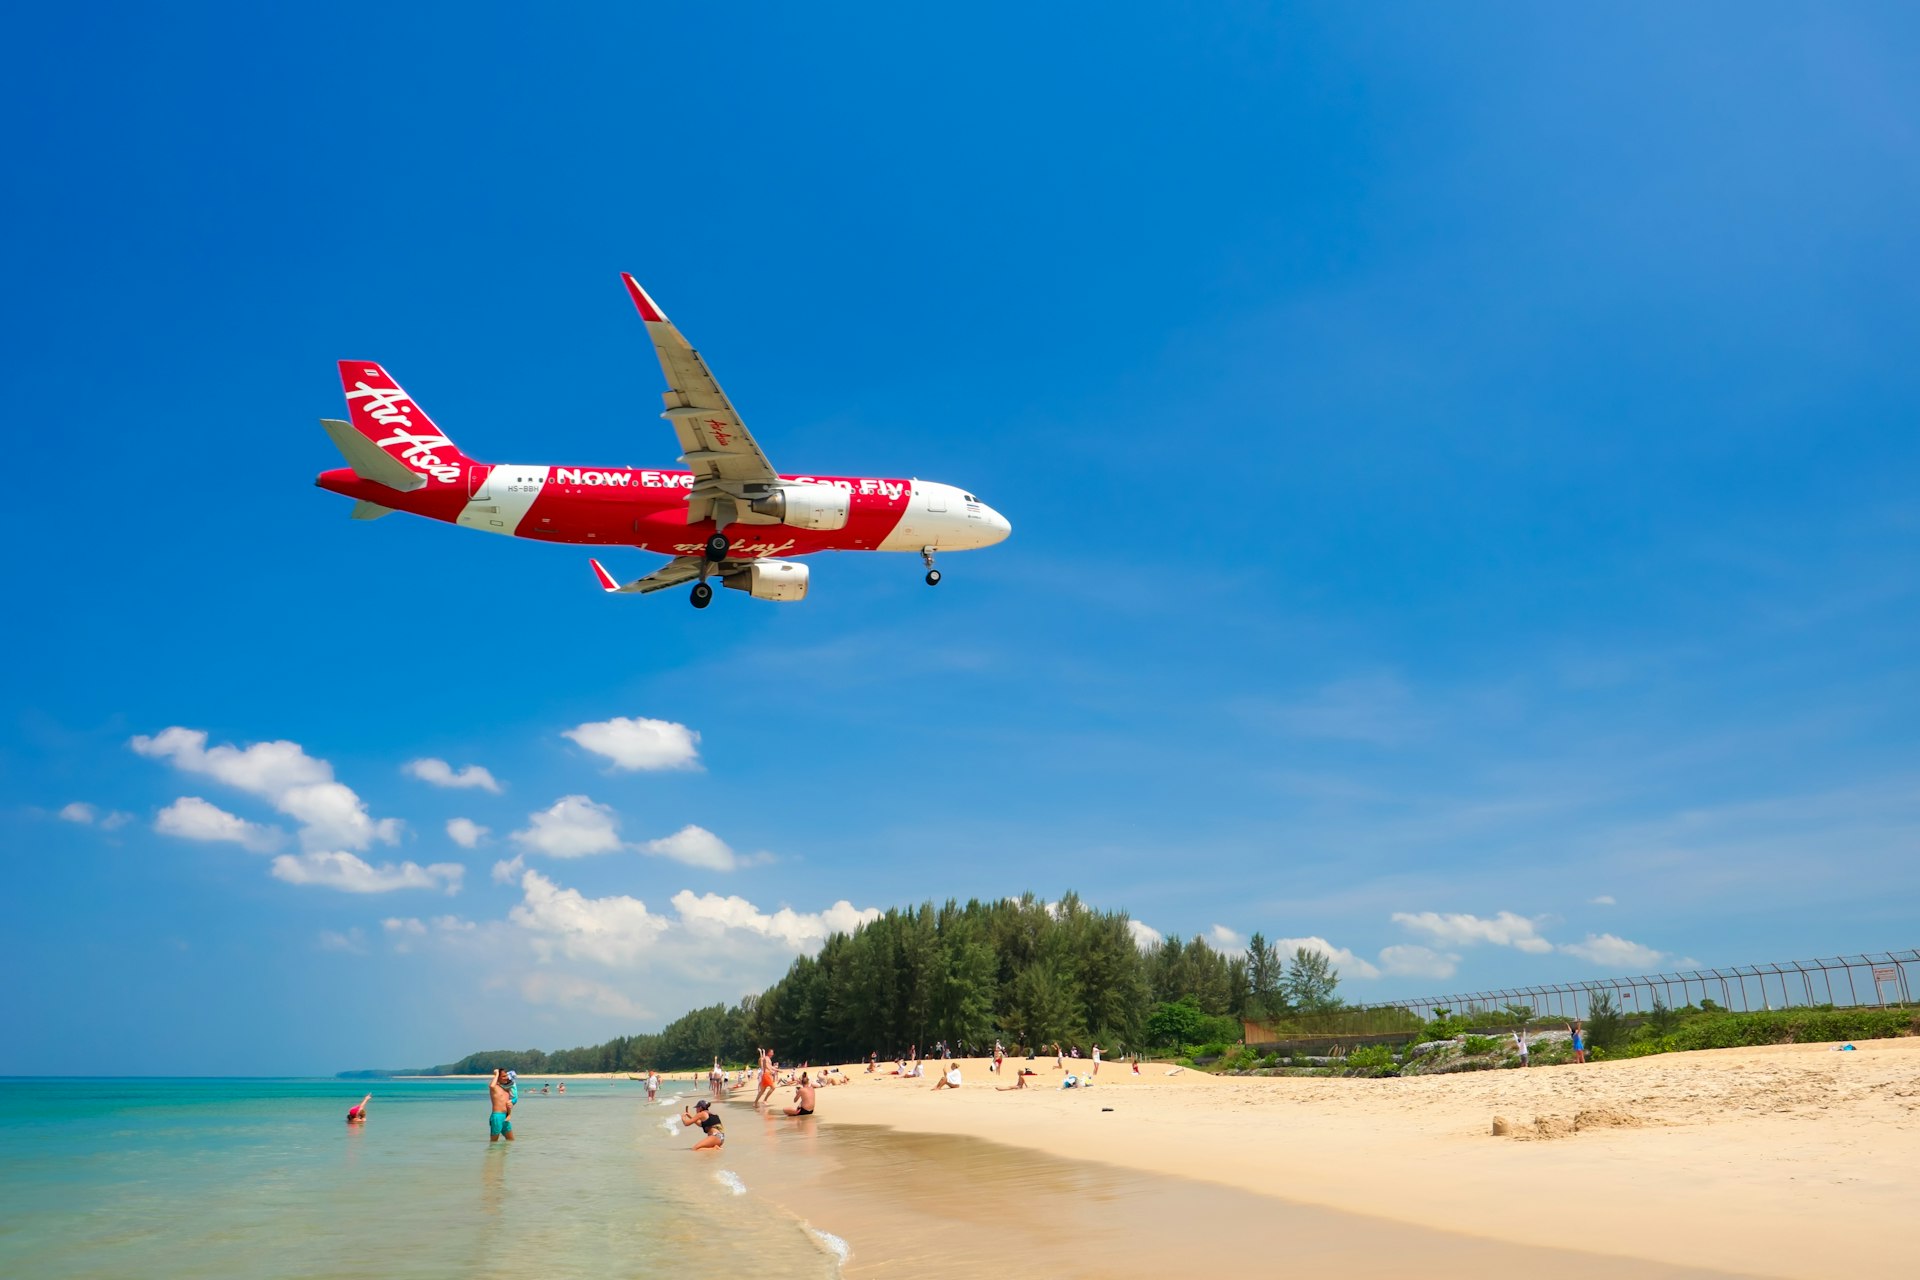 Air Asia plane flies over visitors at Nai Yang Beach to land at Phuket International Airport